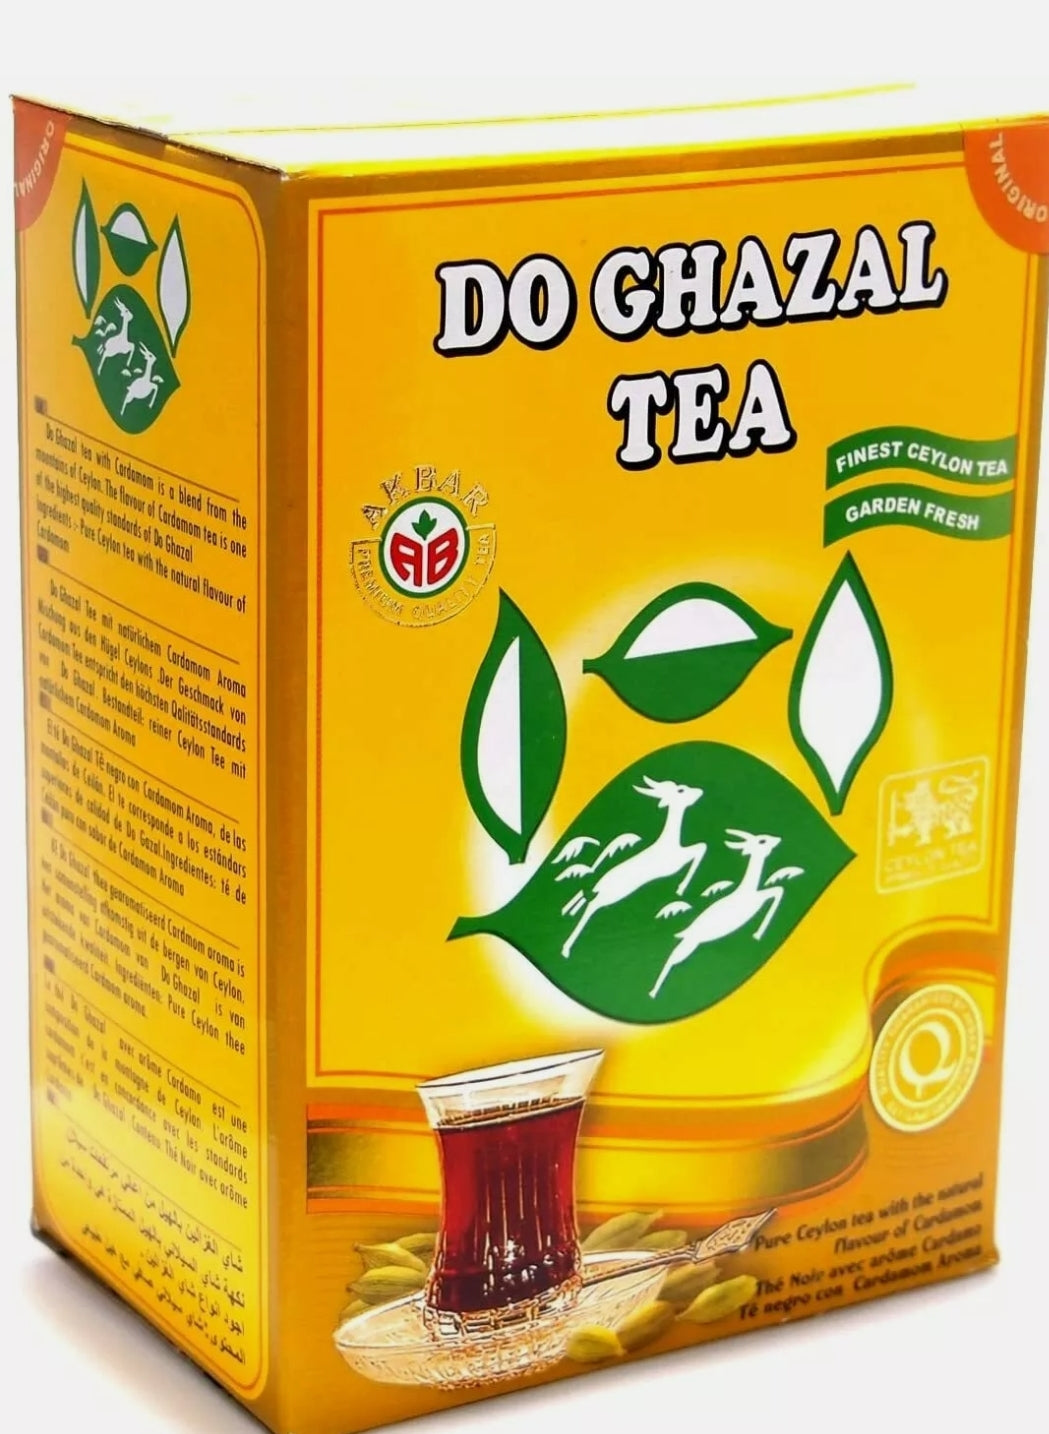 Do Ghazal Tea - Pure Ceylon Loose Leaf Tea With Natural Flavour of Cardamom 500g